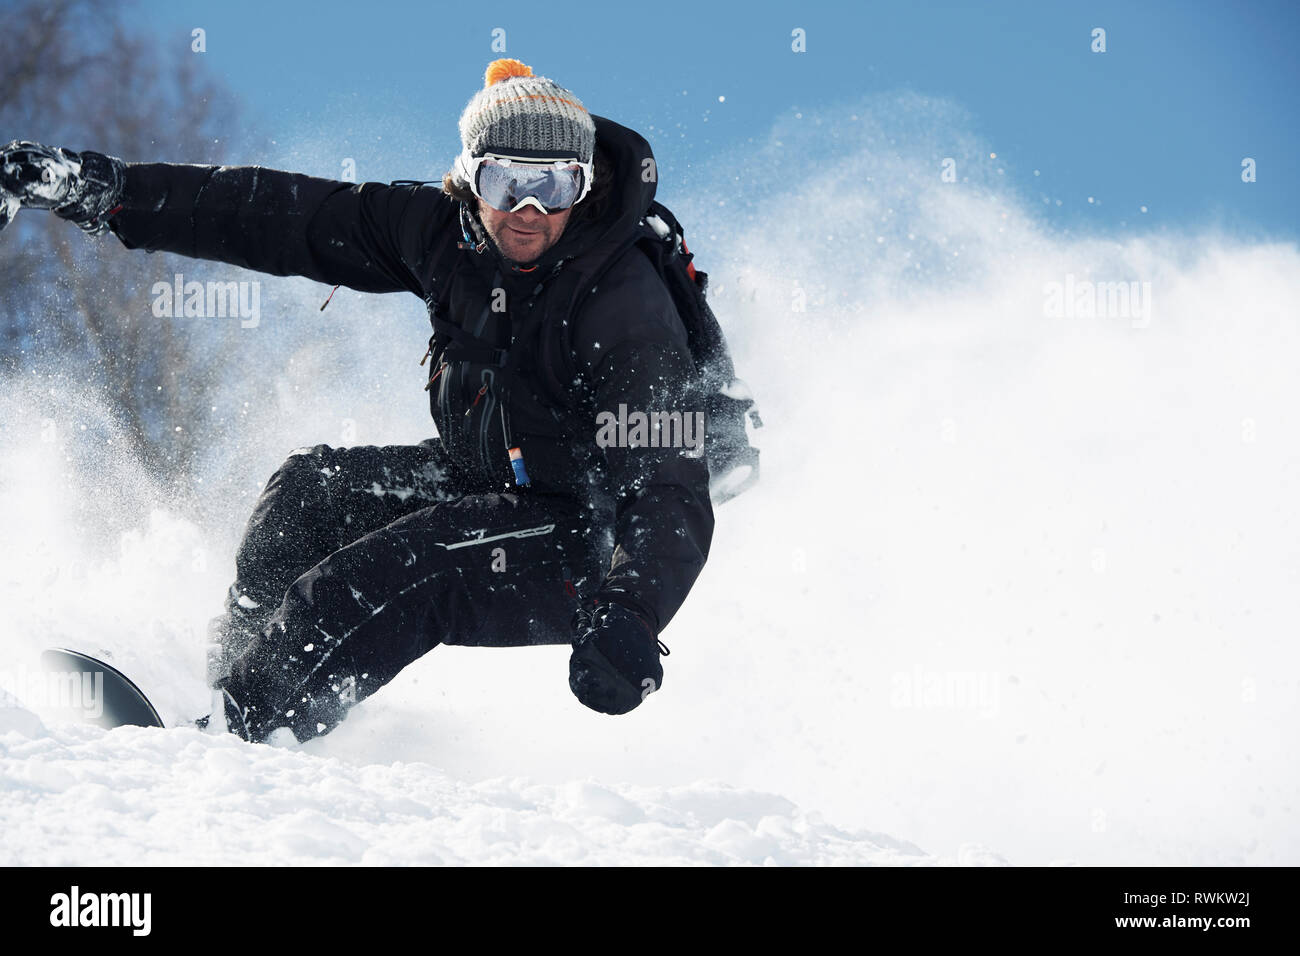 Männliche snowboarder nach unten beschleunigt Berghang, Alpe-d'Huez, Rhône-Alpes, Frankreich Stockfoto